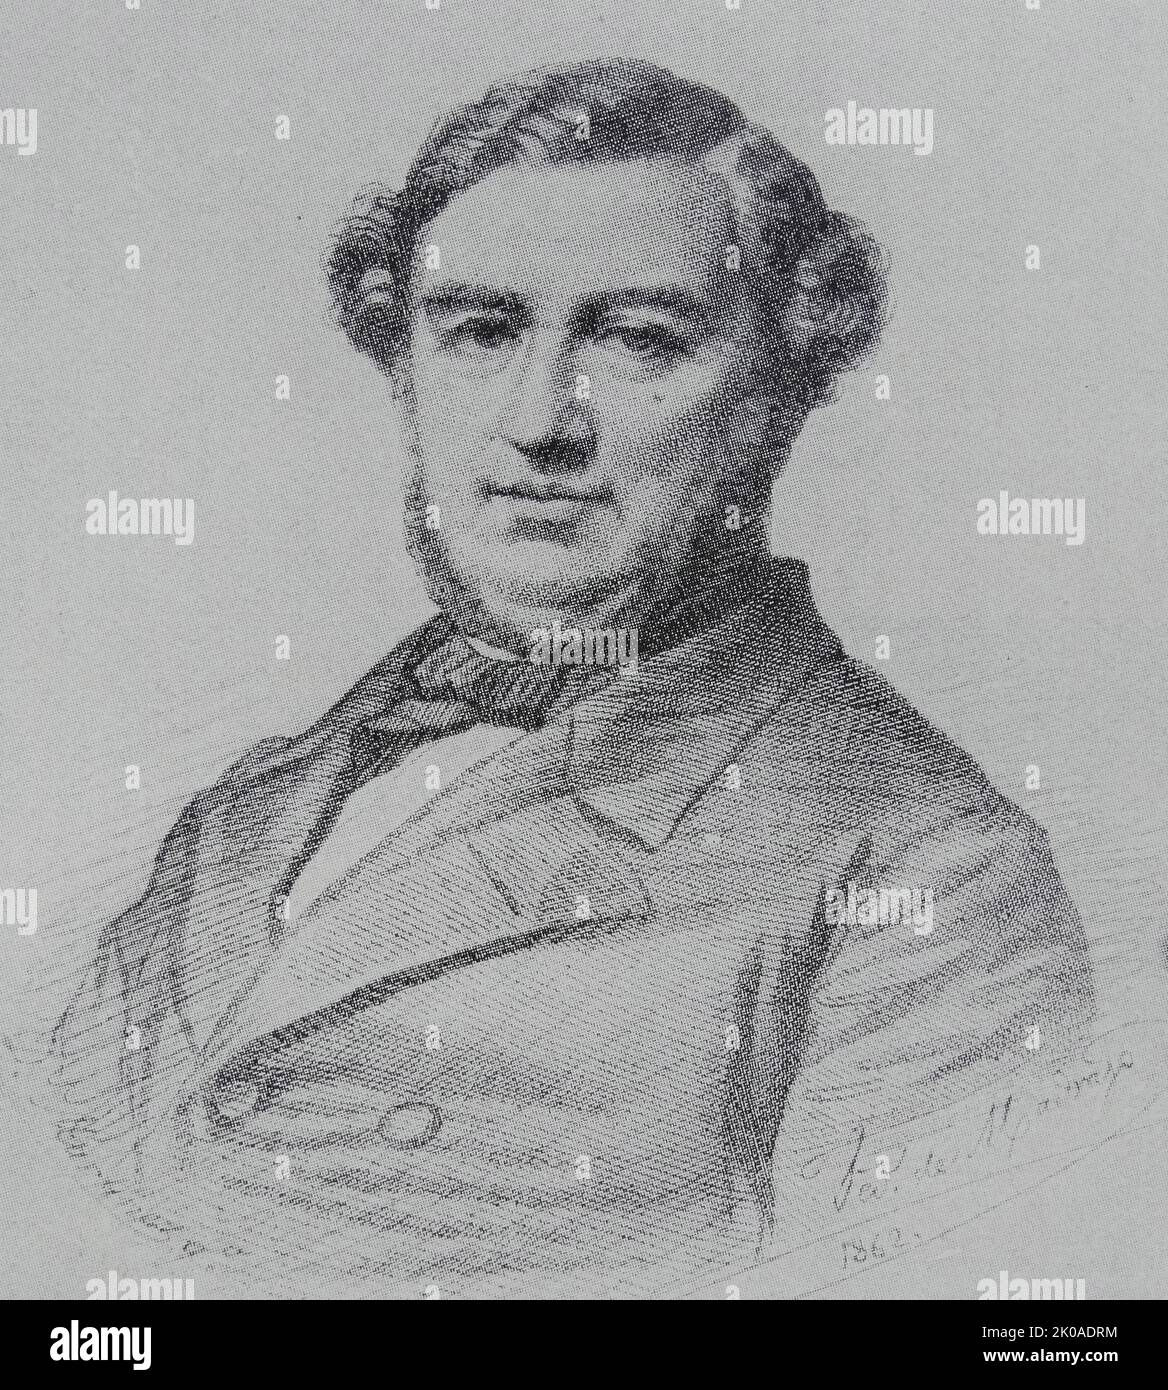 Salustiano de Olozaga y Almandoz (1805 - 1873) politico, diplomatico, avvocato e scrittore spagnolo che servì come primo ministro della Spagna e fu nominato tre volte ambasciatore in Francia. 1862 Foto Stock